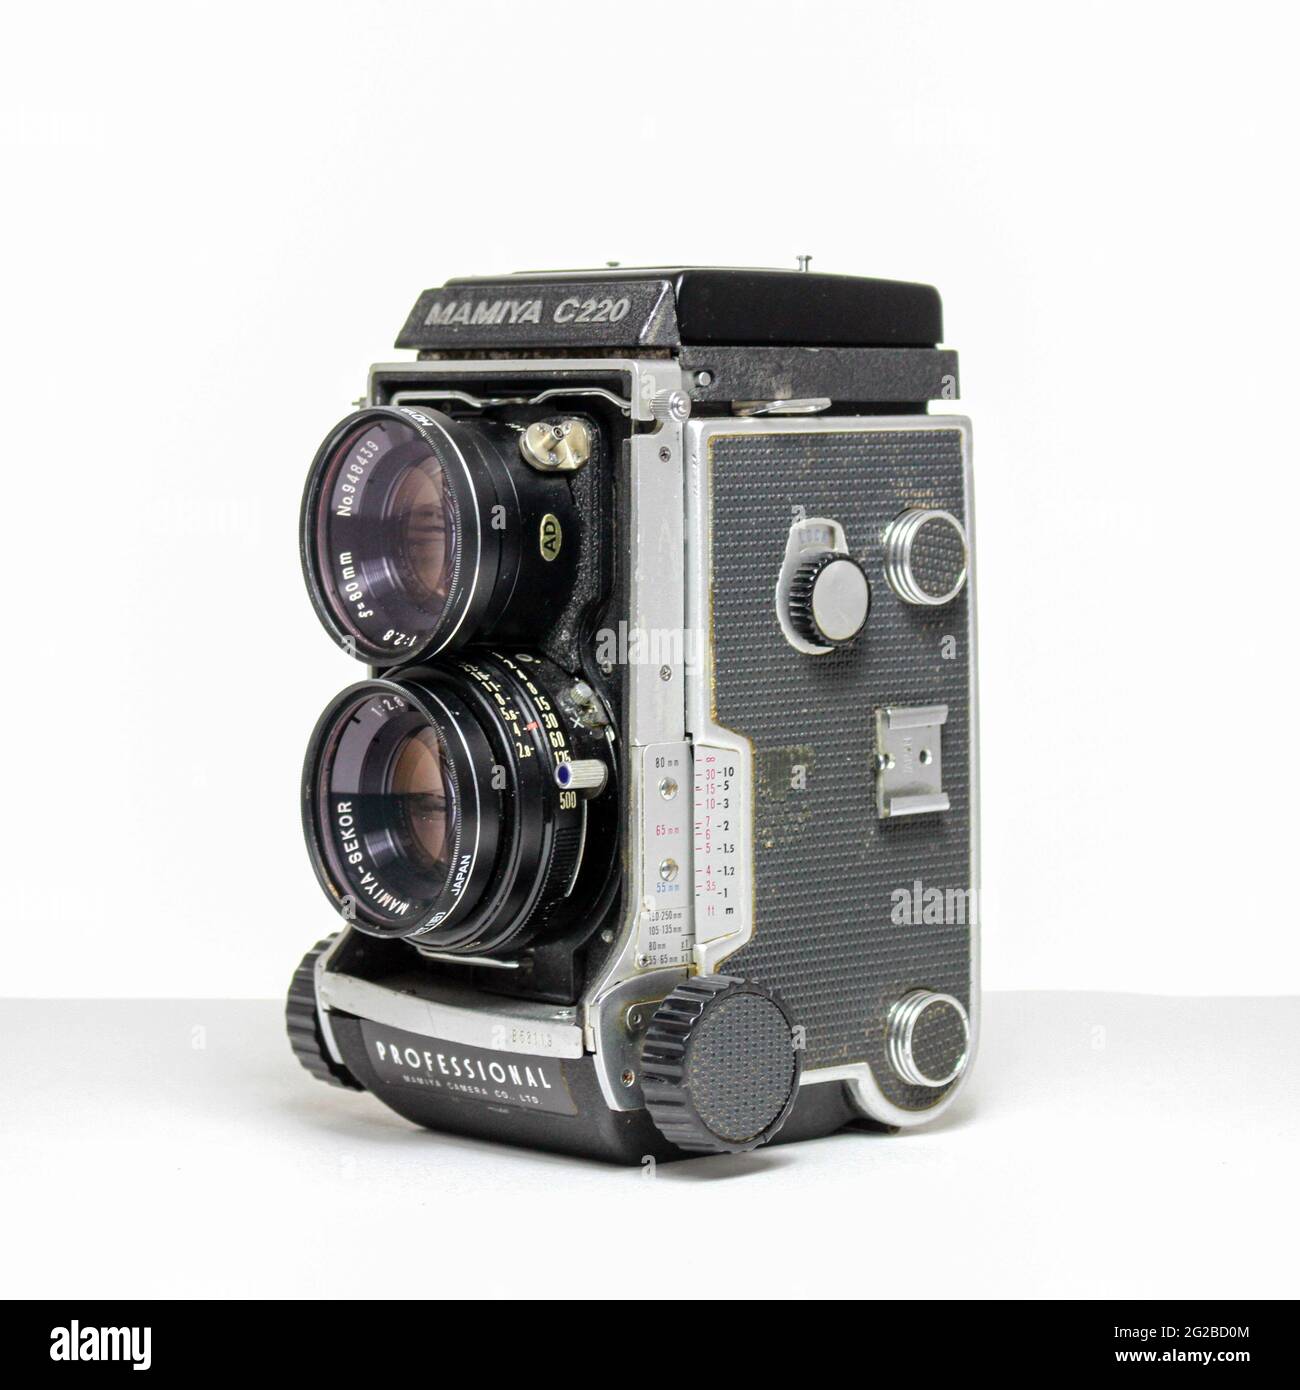 Videocamera mamiya c220 a doppia lente reflex per film di medio formato. Foto Stock